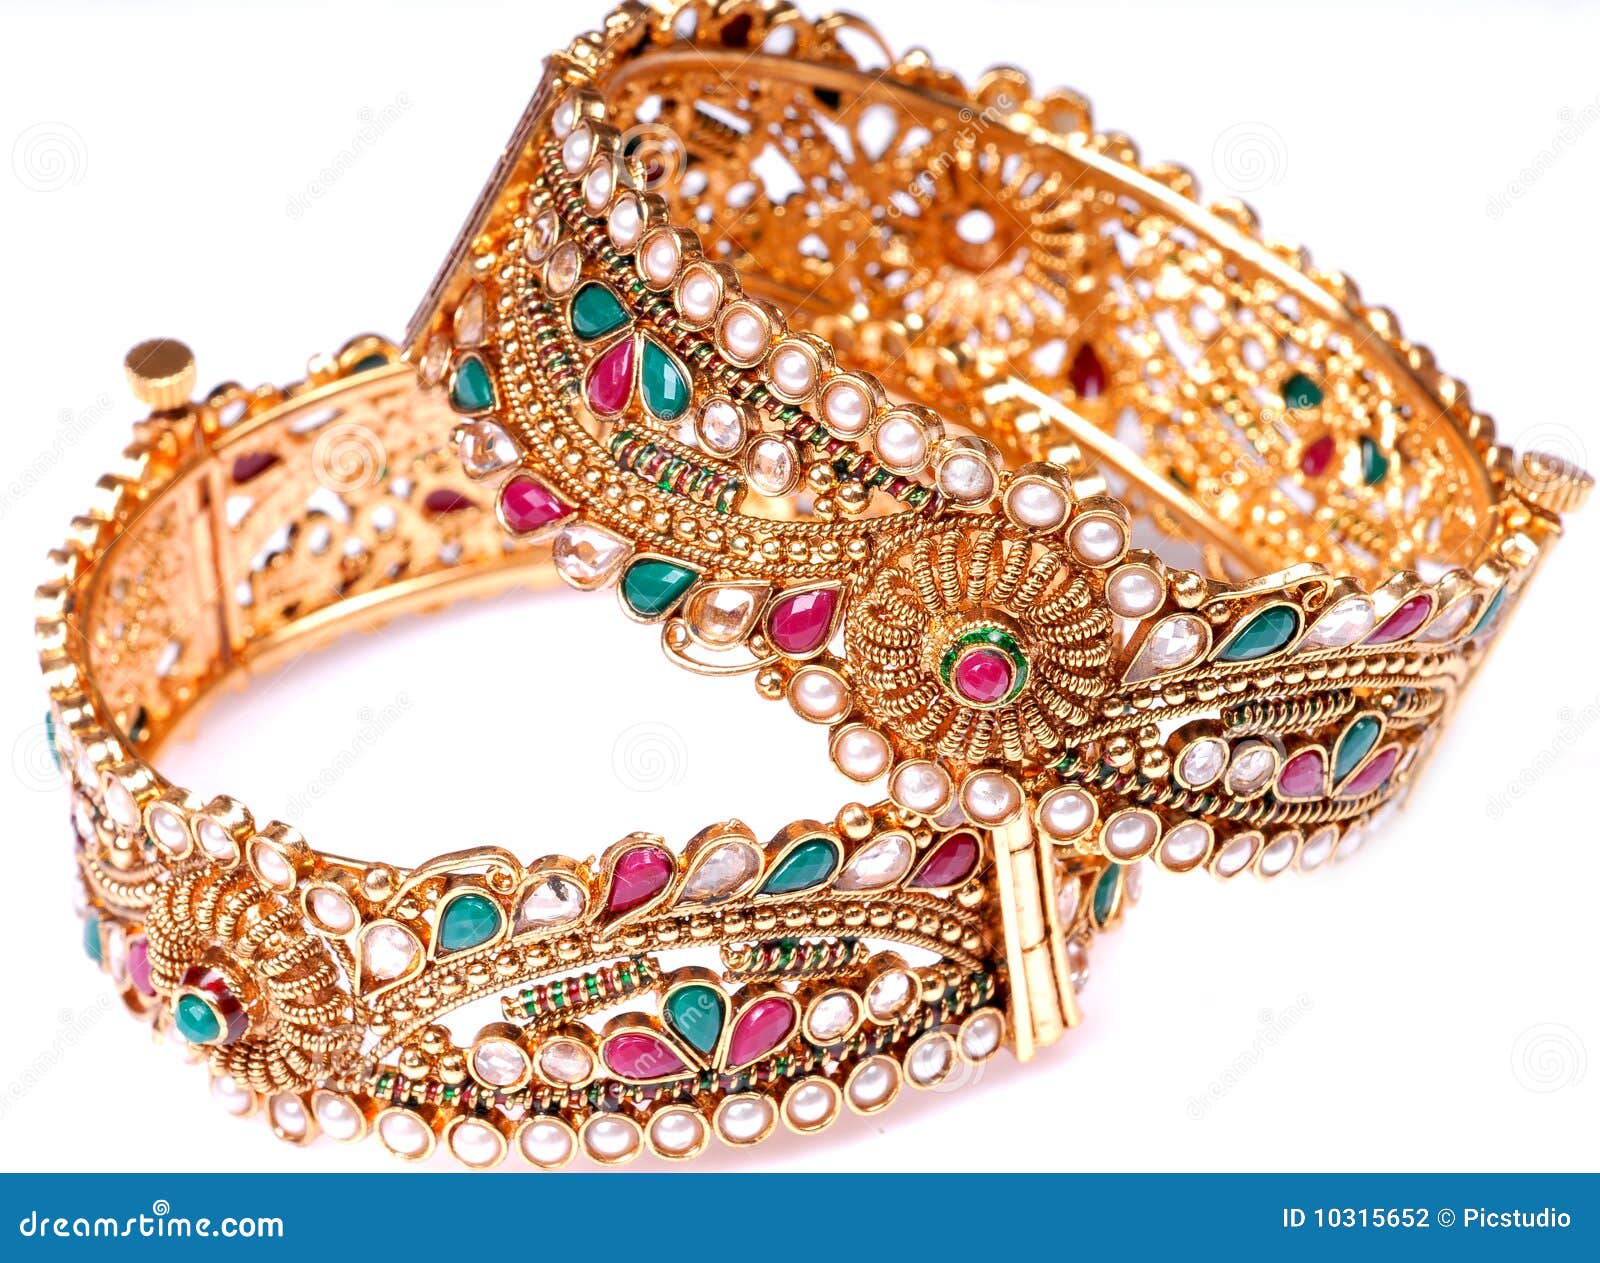 Expensive Wedding Gift Jewellery Stock Photo - Image of ...